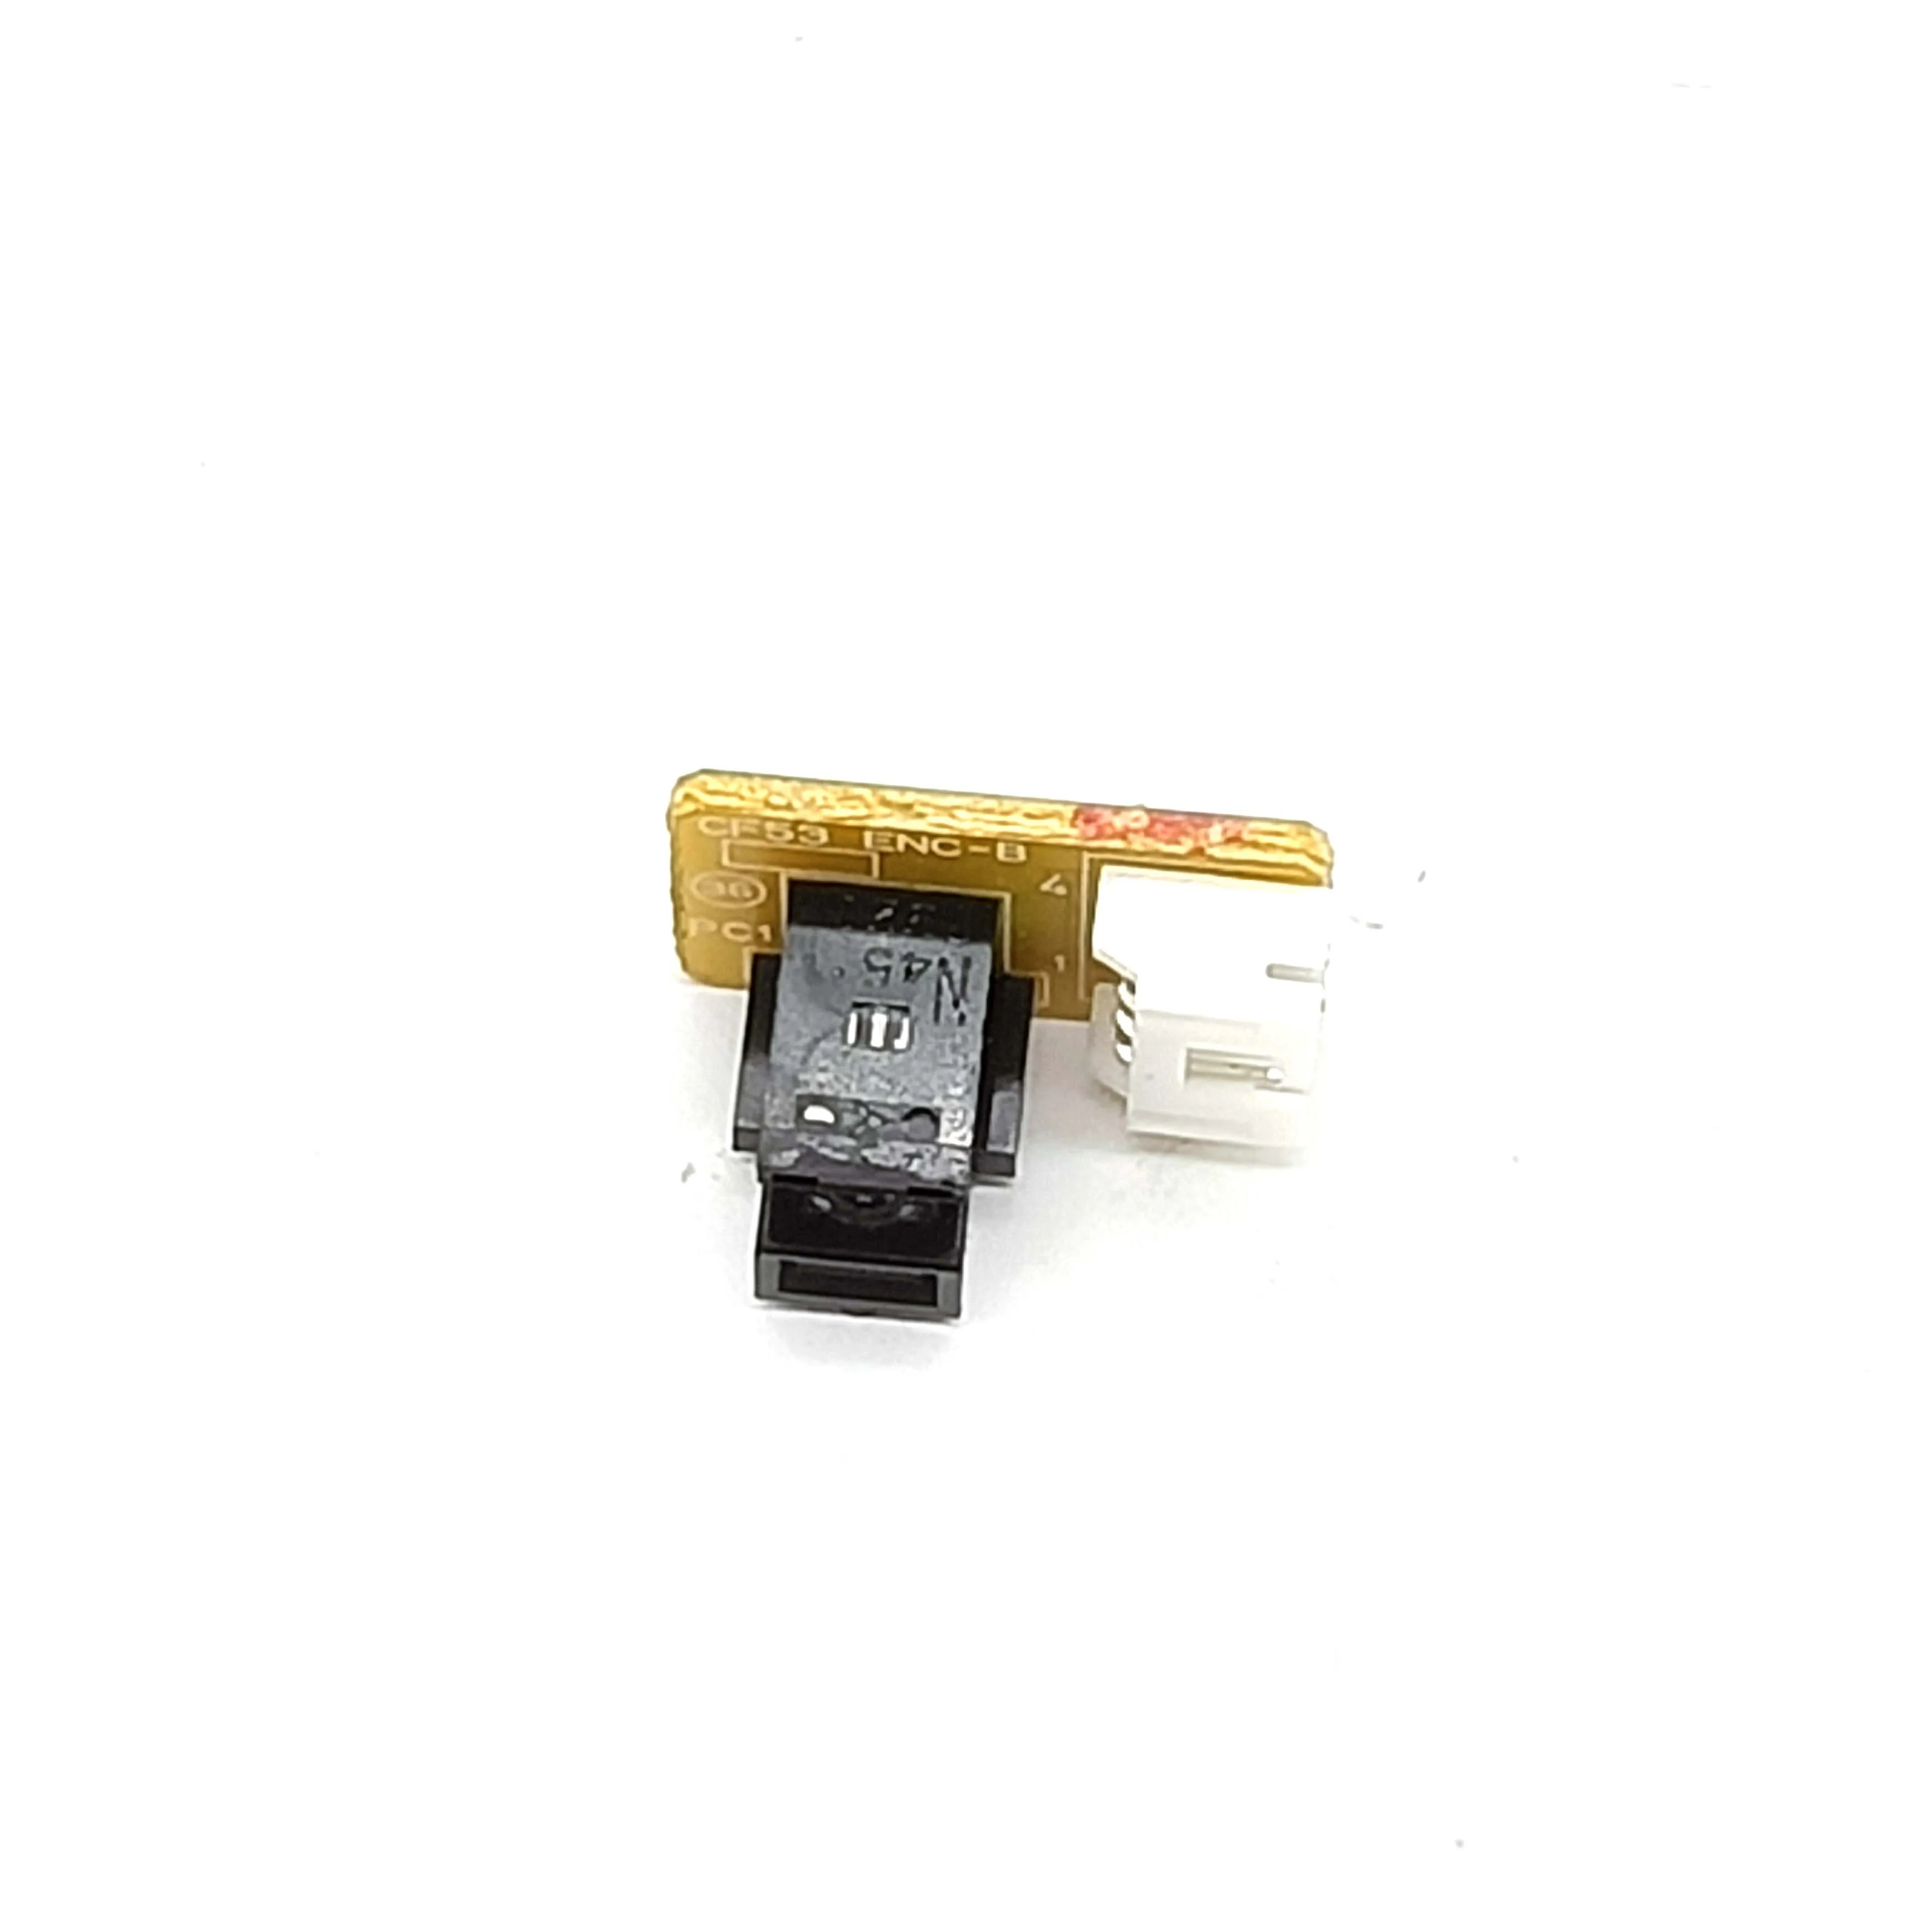 

Sensor E25-417 Fits For Epson P607 P800 P408 P400 P806 R3000 P608 P600